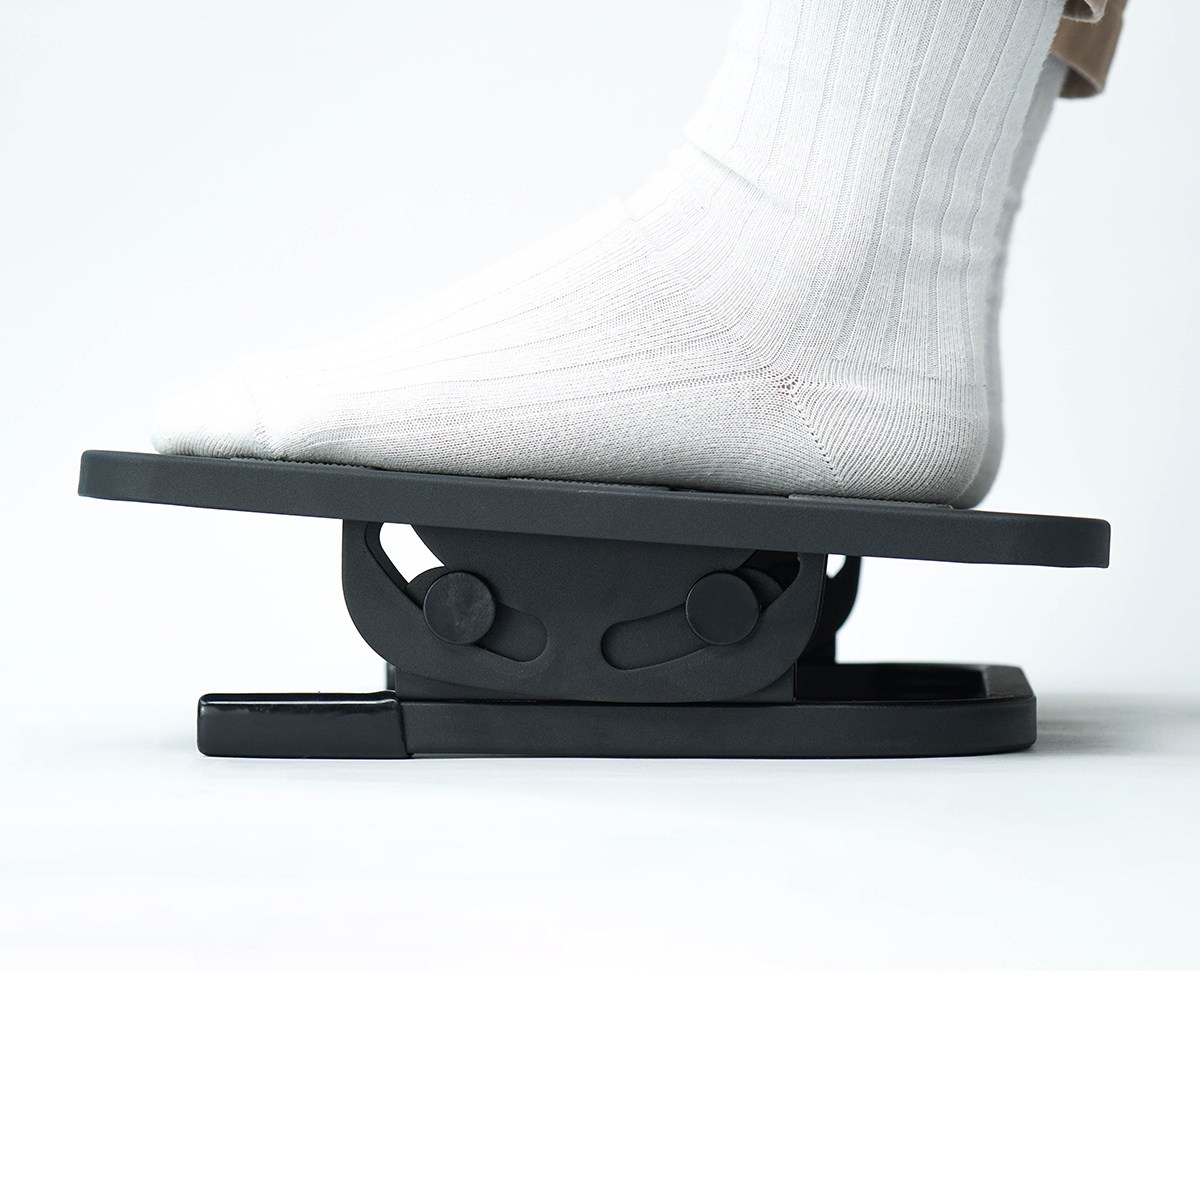 Kê chân công thái học HPW-FR01 - Chất liệu: Thép - feet cao su chống trượt - Chịu tải 20kg - Hàng Chính Hãng